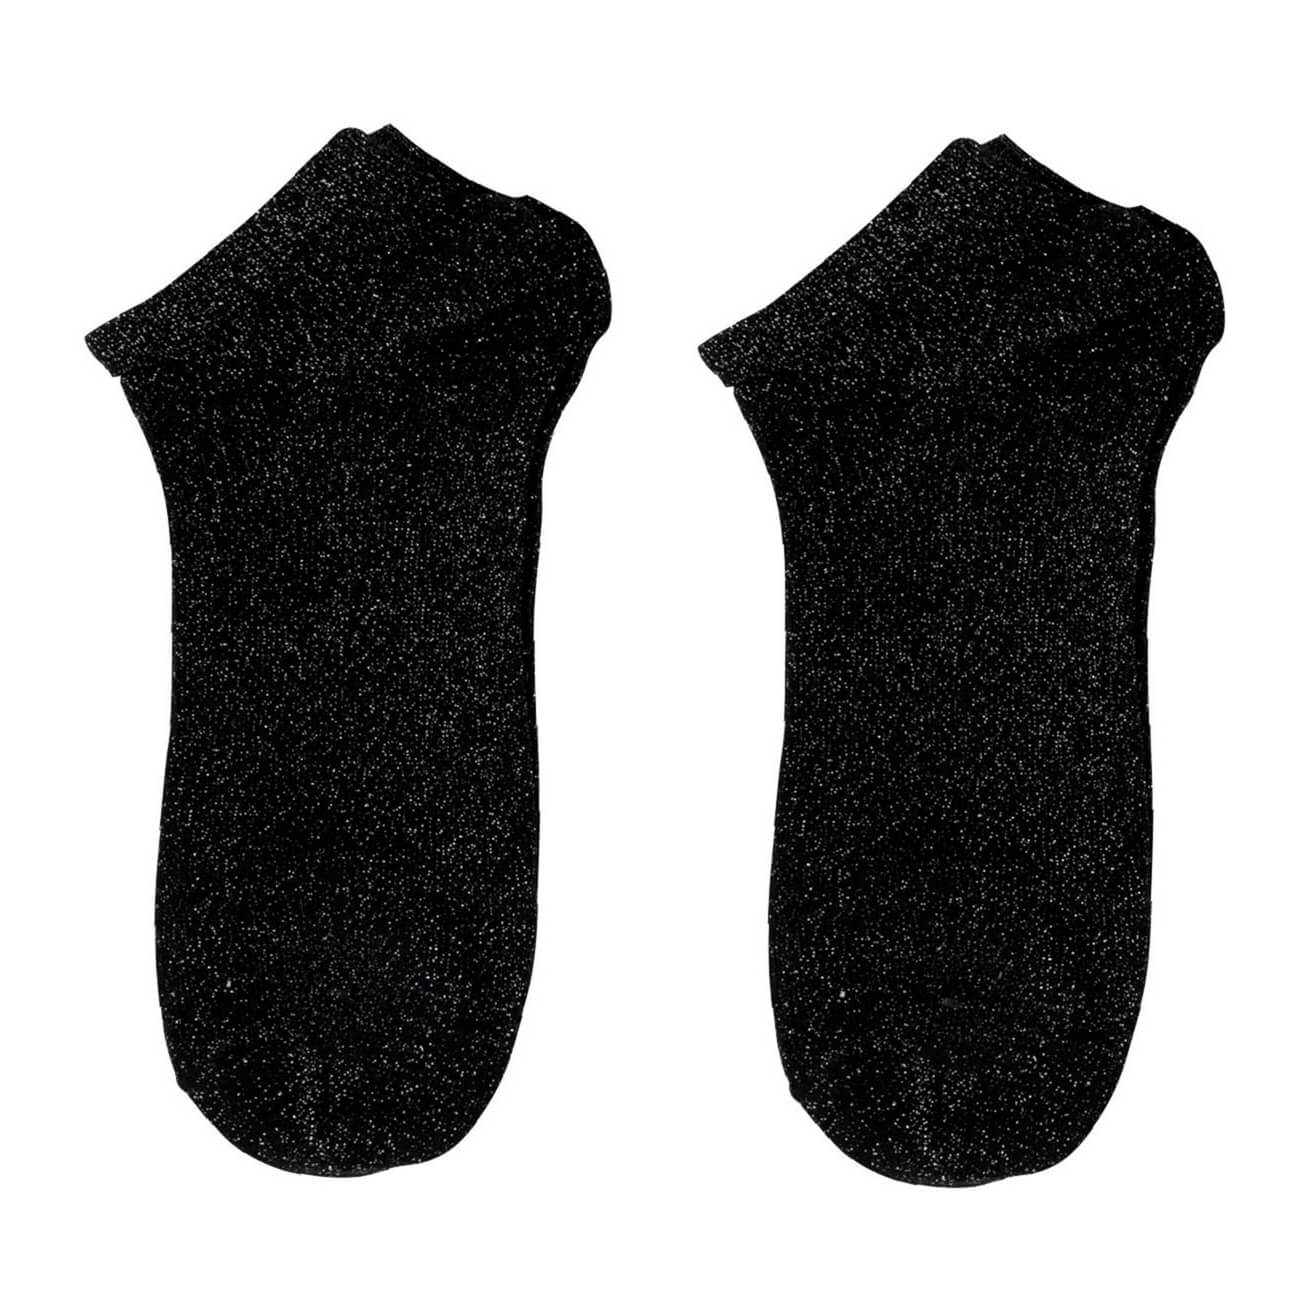 Носки женские, р. 36-38, хлопок/полиэстер, черные, Glint одеяло хлопок оригинал р 140х205